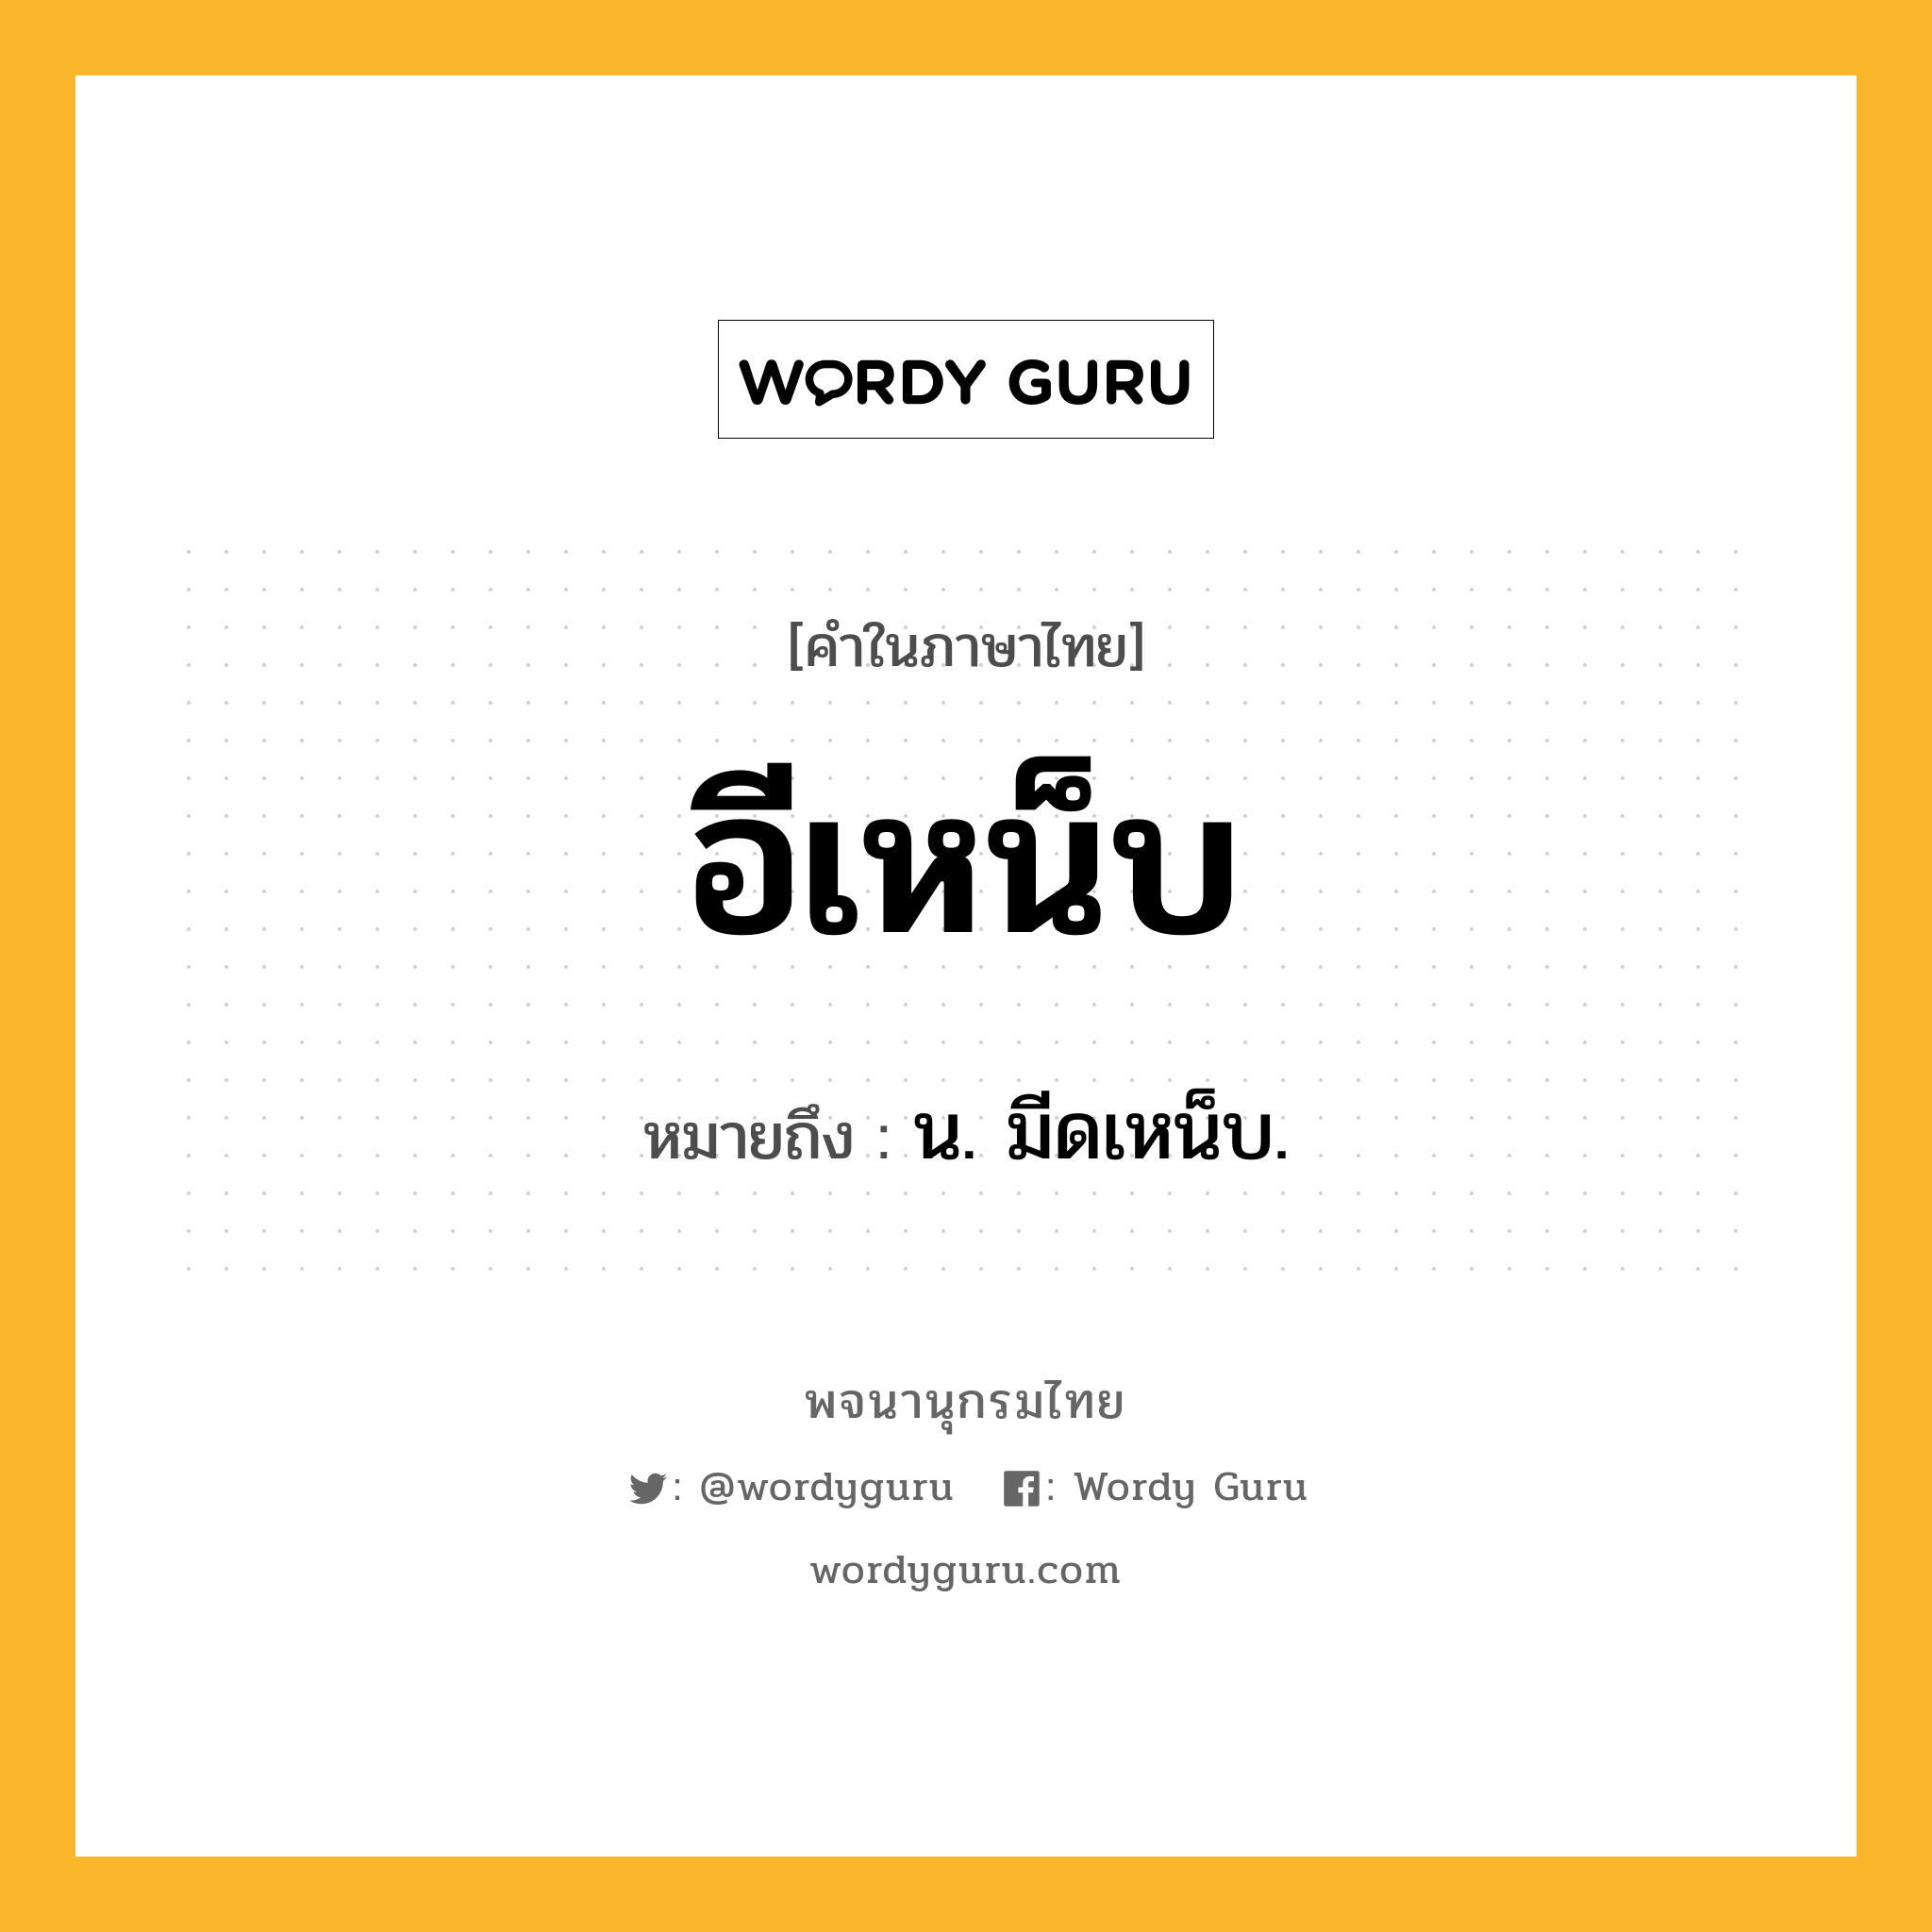 อีเหน็บ หมายถึงอะไร?, คำในภาษาไทย อีเหน็บ หมายถึง น. มีดเหน็บ.